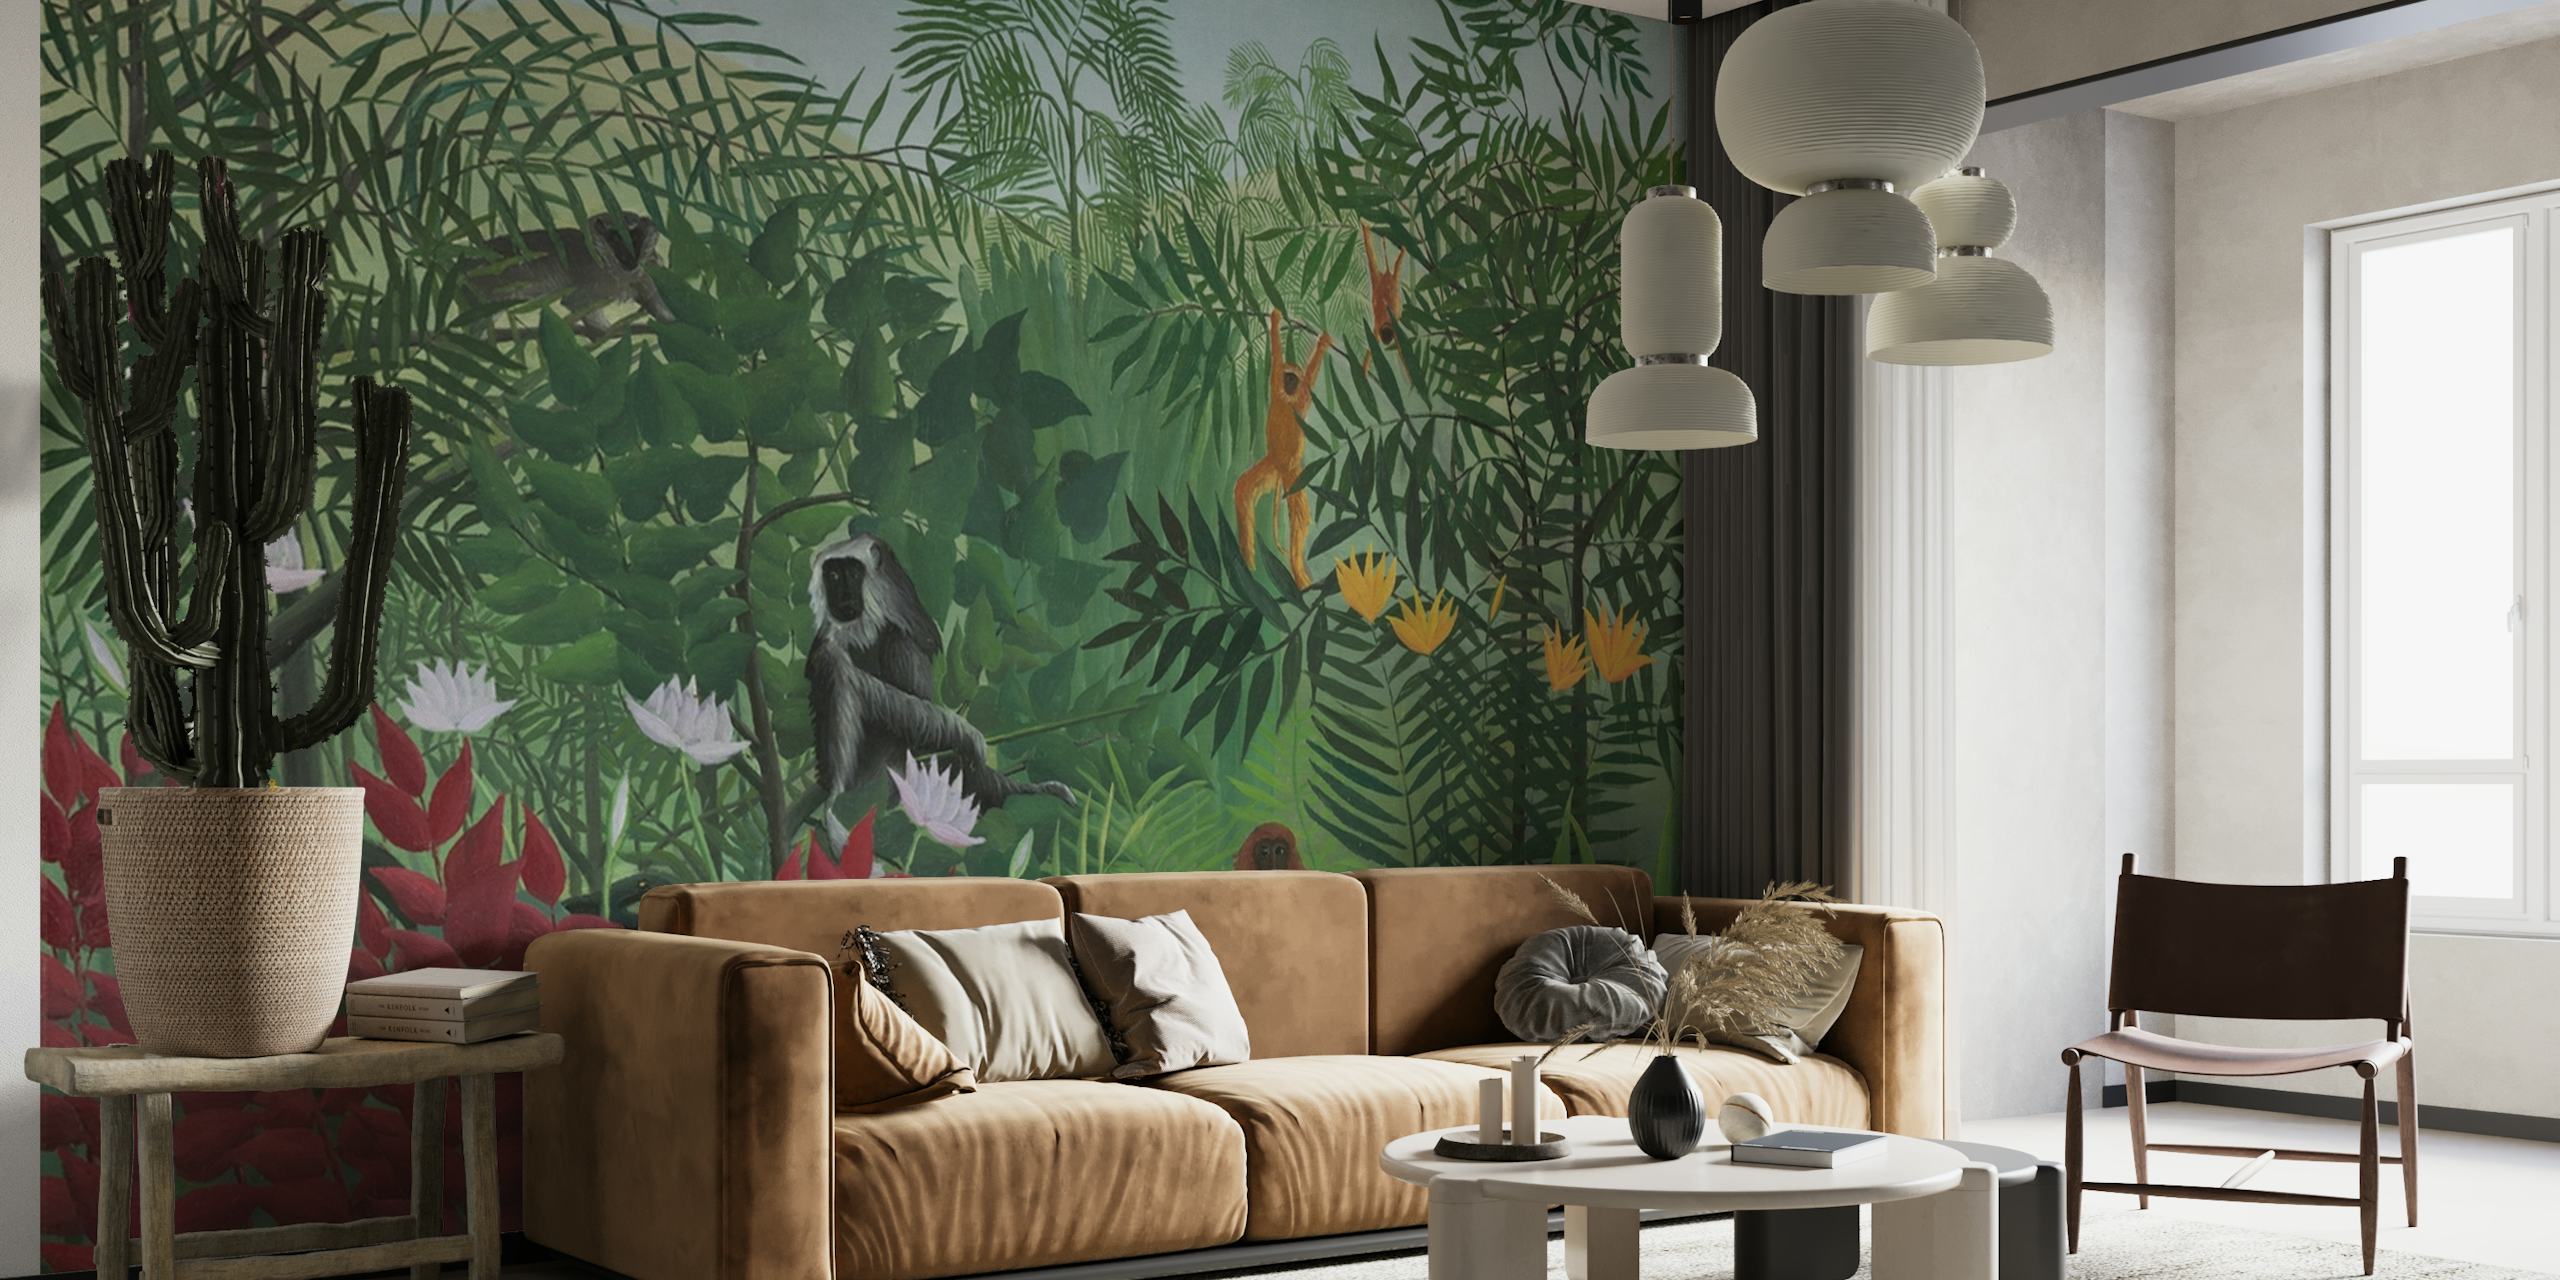 Murale représentant une scène de forêt tropicale avec des singes, inspirée du style artistique d'Henri Rousseau.